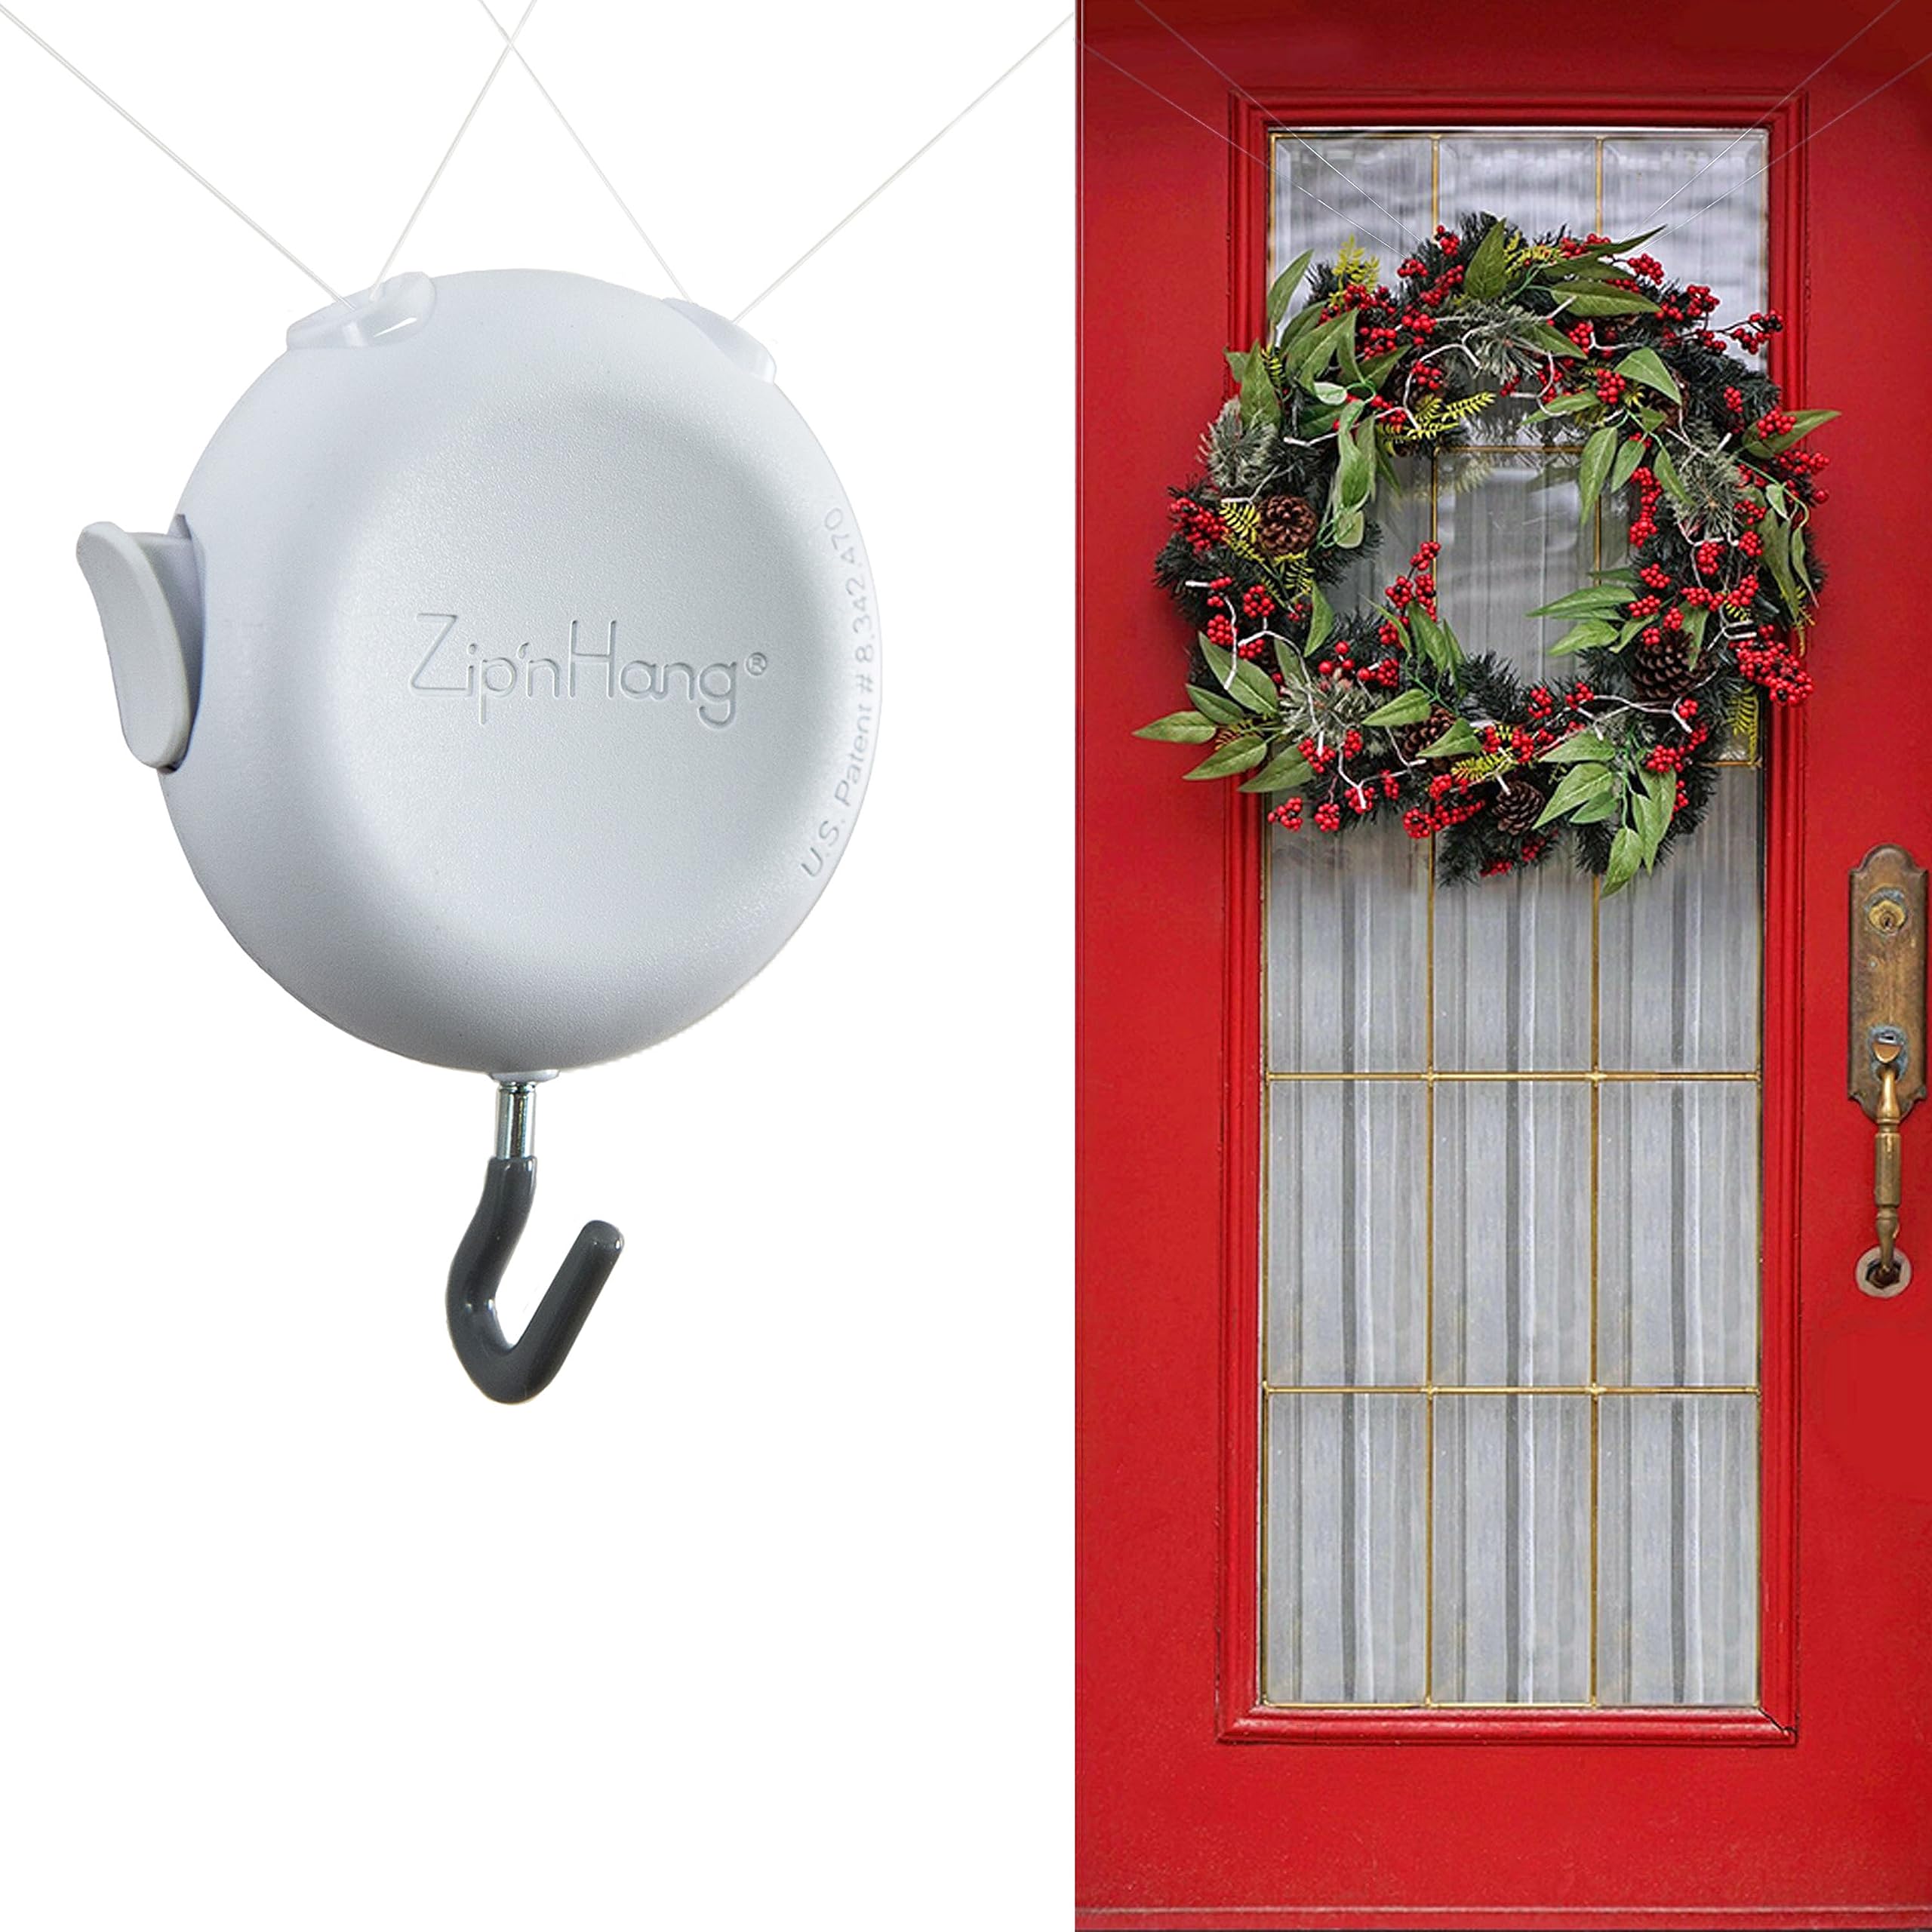 Zip n Hang Nearly Invisible Wreath Hangers for Front Door by ZipnHang - Over The Door Hanger & Door Wreath Hanger for Front Door Decor - Wo